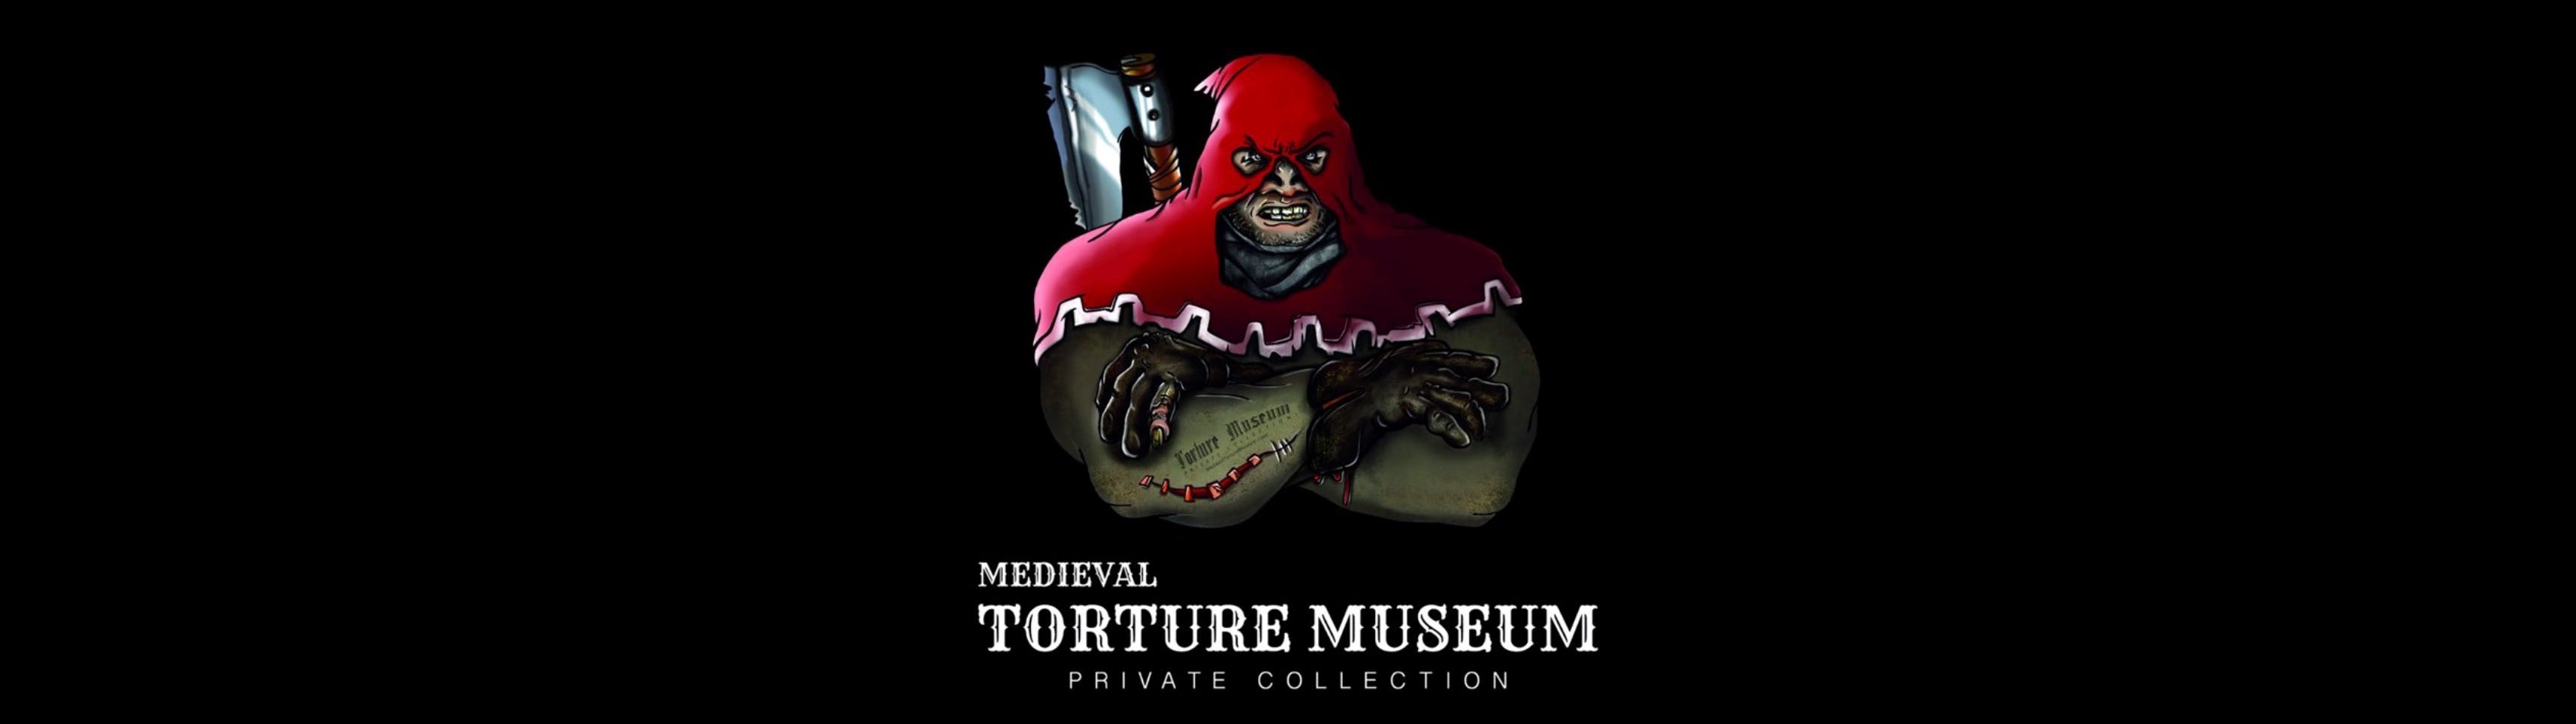 Middeleeuws martelmuseum met audiogids, spookjachtervaring en Tiny Art Gallery-ticket